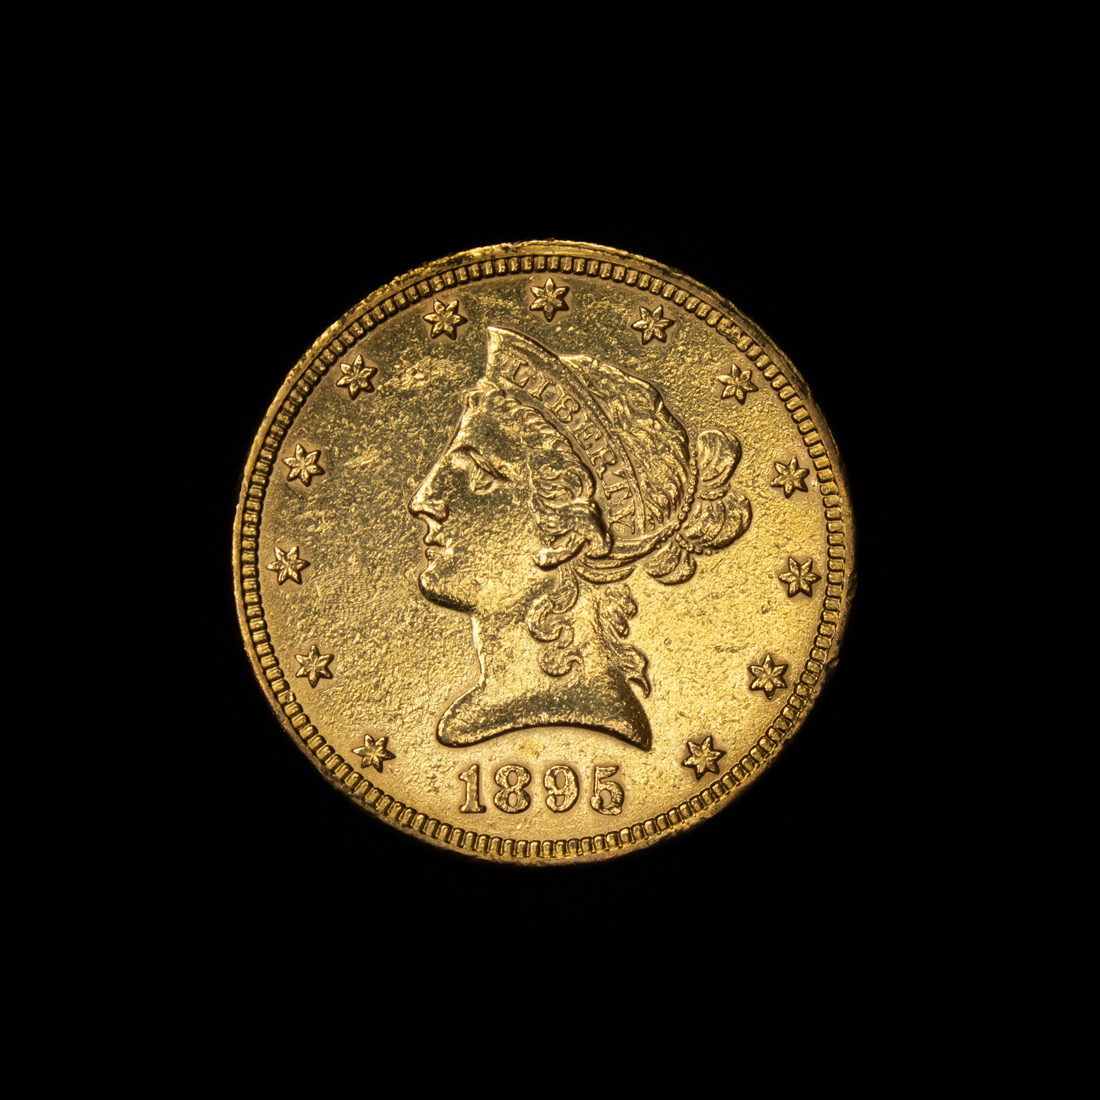  10 GOLD EAGLE 1895 LIBERTY HEAD 2d170a